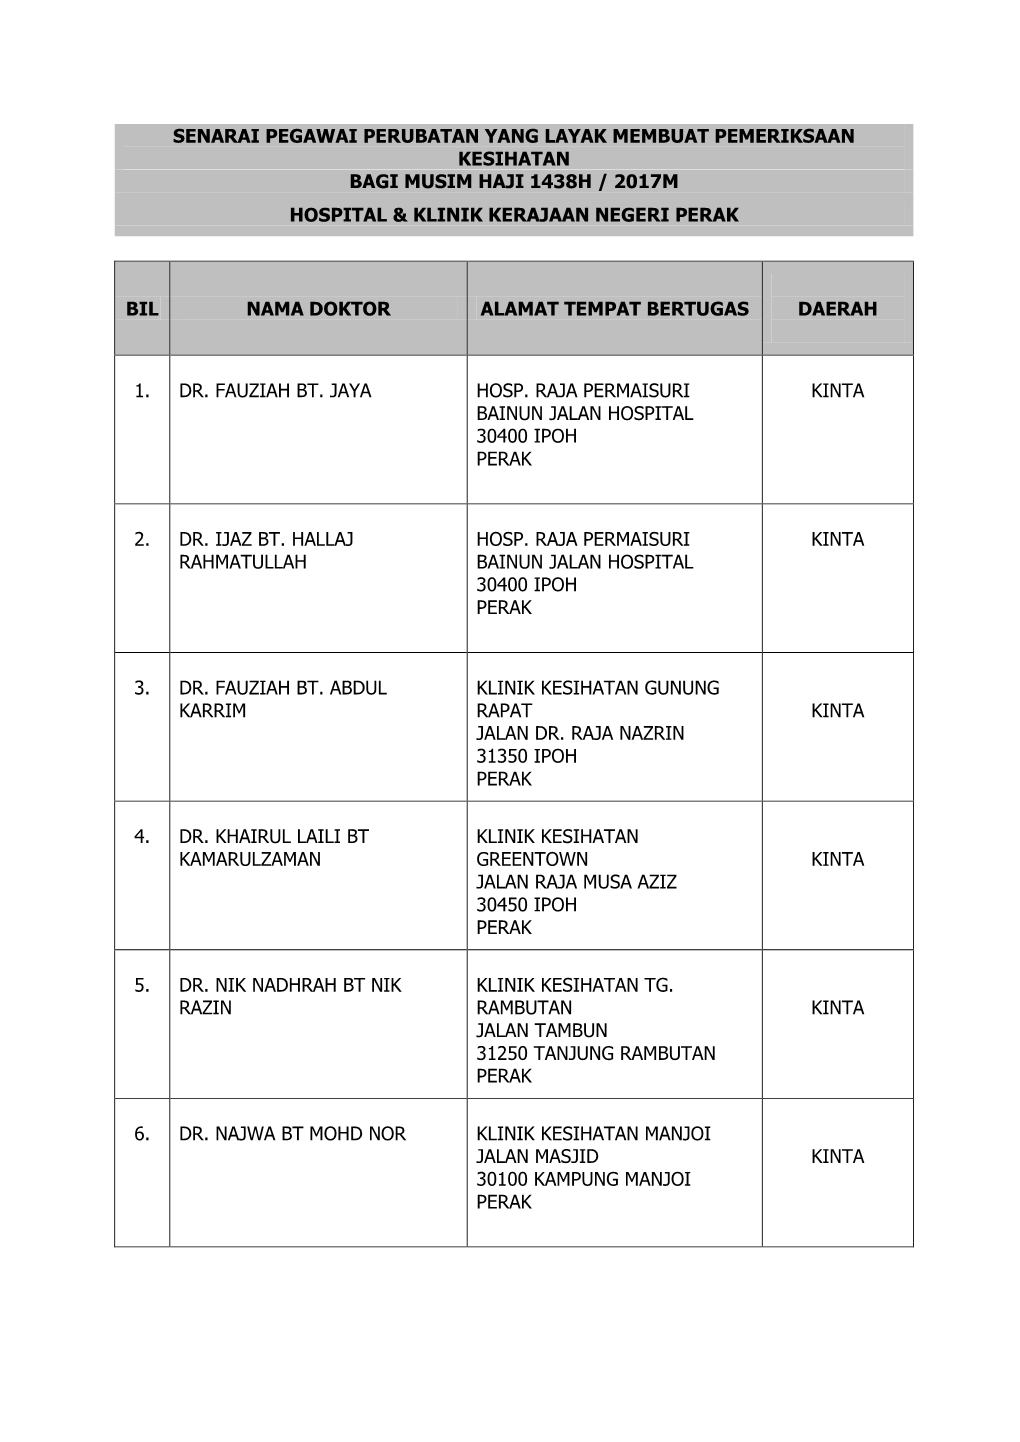 Senarai Pegawai Perubatan Yang Layak Membuat Pemeriksaan Kesihatan Bagi Musim Haji 1438H / 2017M Hospital & Klinik Kerajaan Negeri Perak